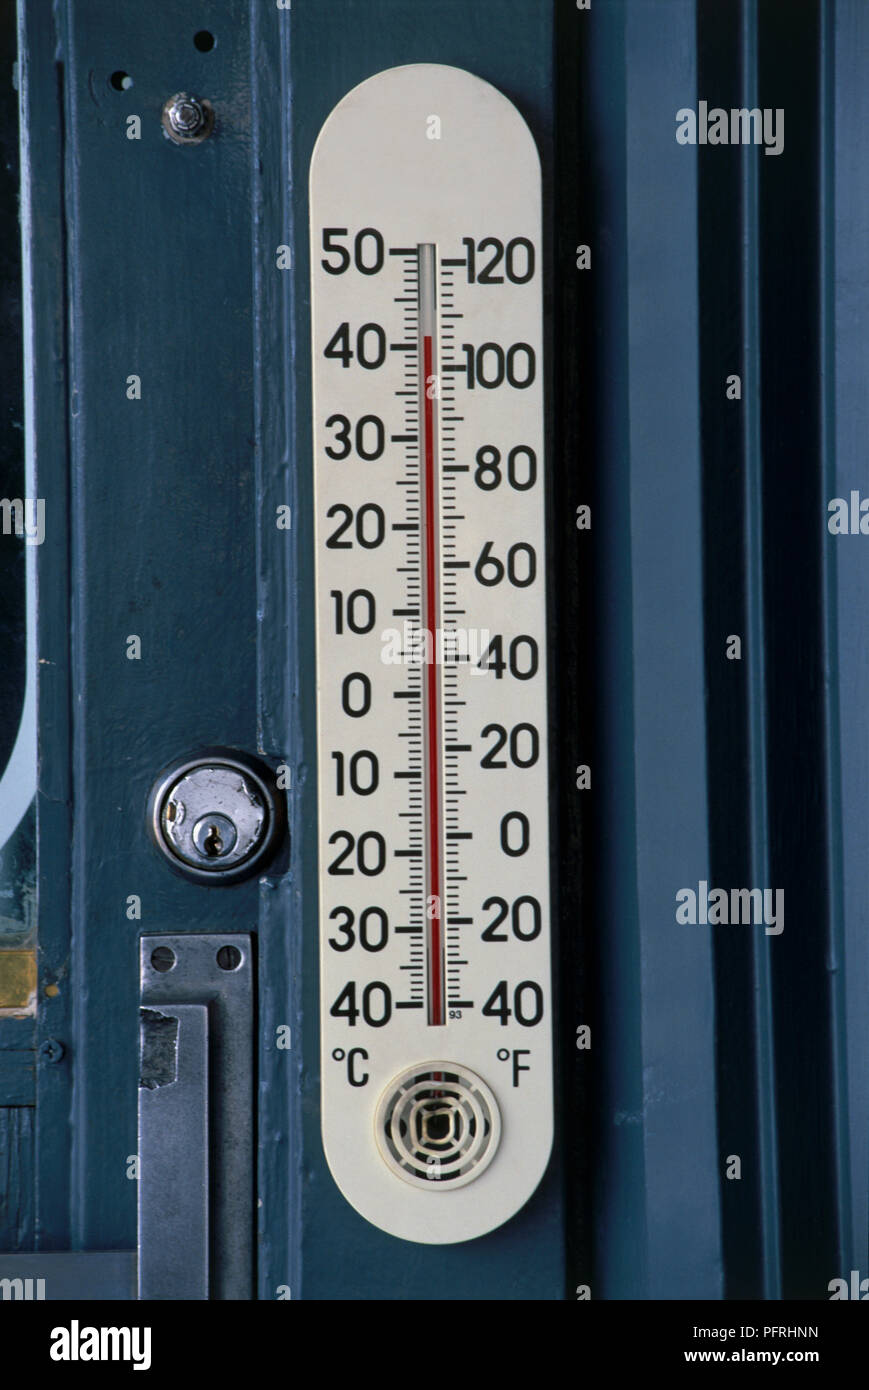 USA, Nevada, Las Vegas, Temperaturanzeige in Celsius und Fahrenheit  angezeigt Stockfotografie - Alamy